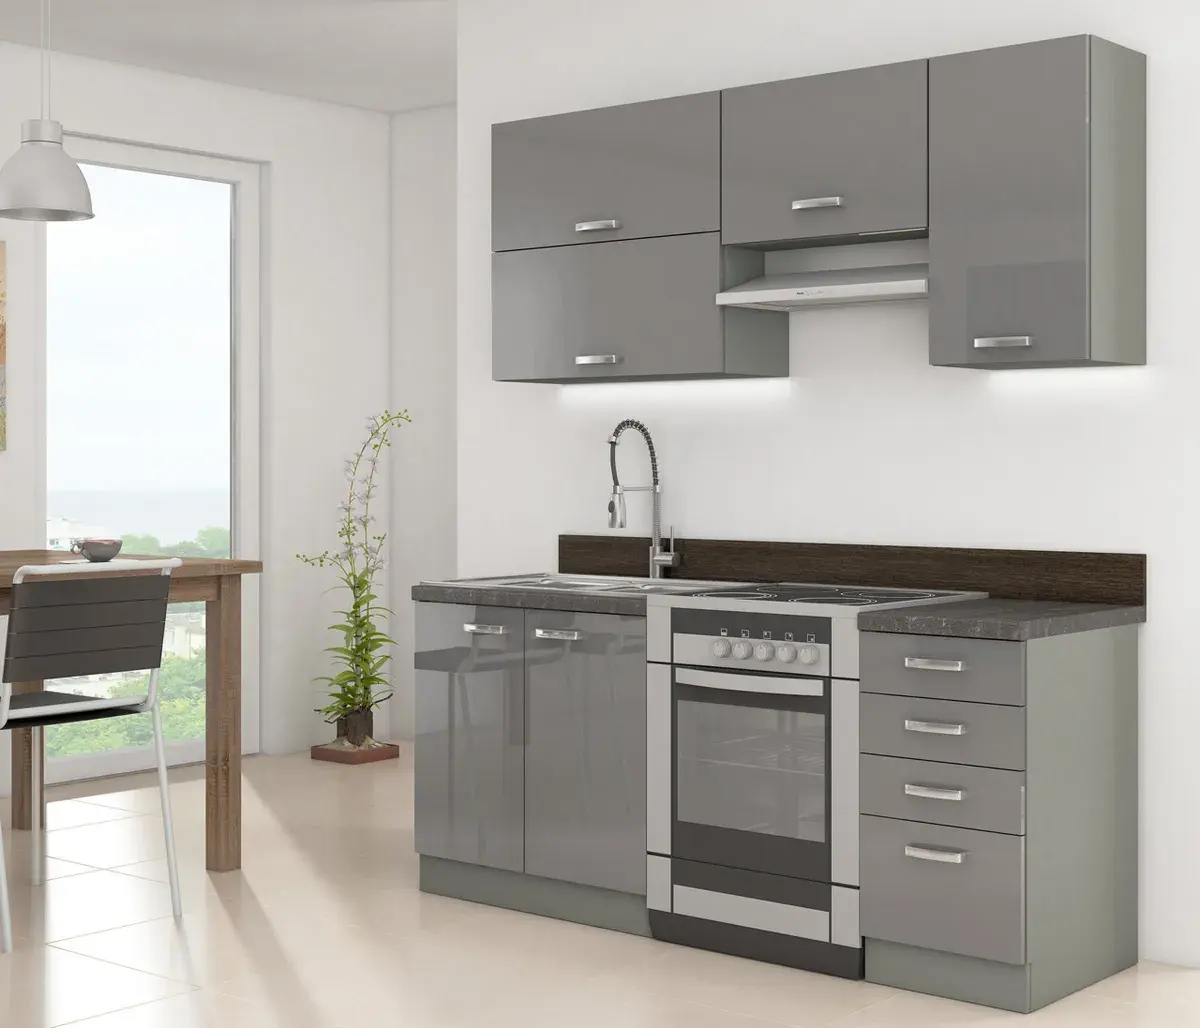 Armario de cocina Modular pequeño, mueble de pared de acero inoxidable, Color gris, personalizado, recomendado Industrial, 1 Juego